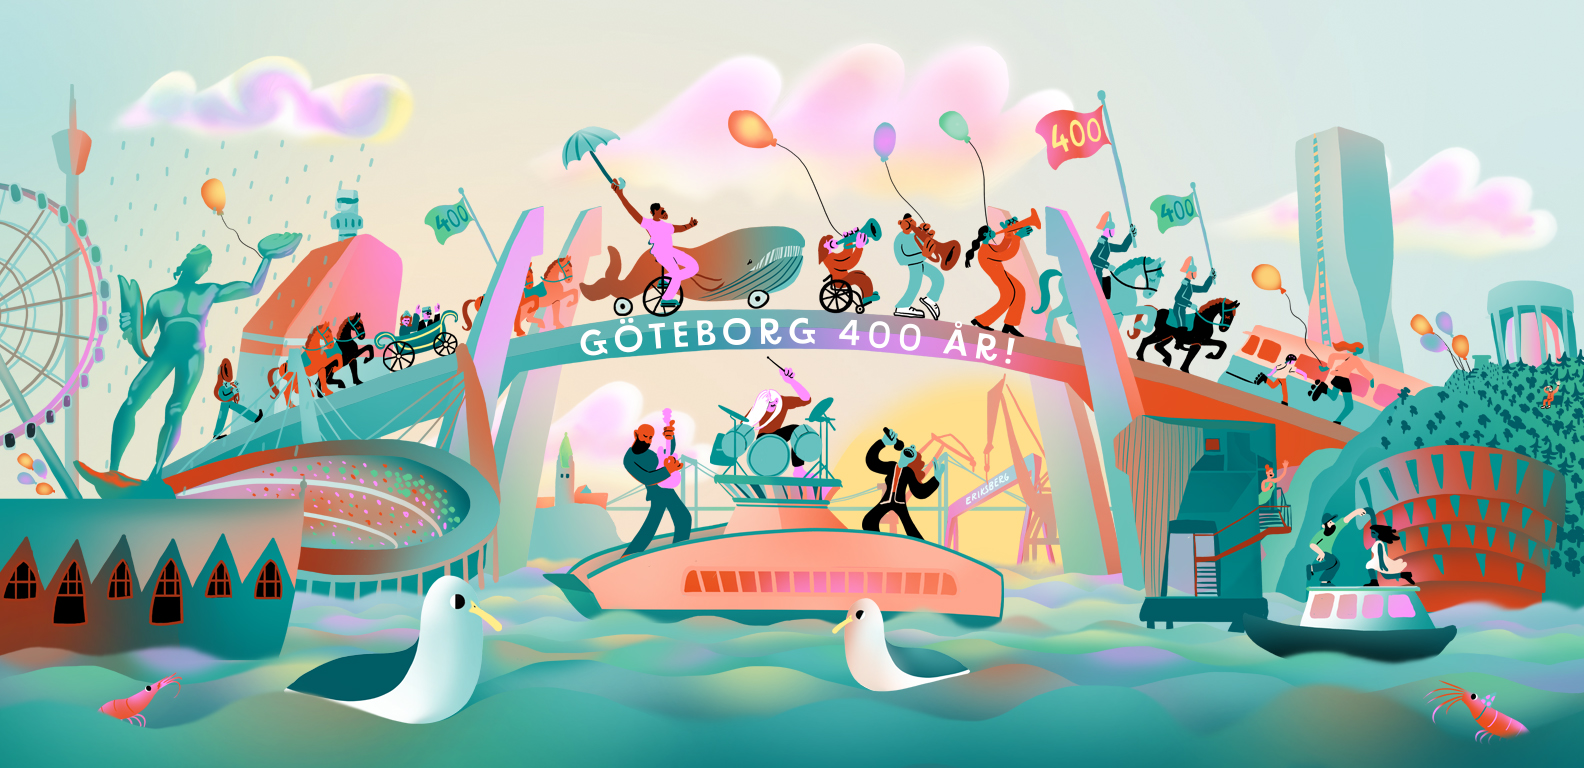 Färgglad illustration för Göteborgs 400 års jubileum